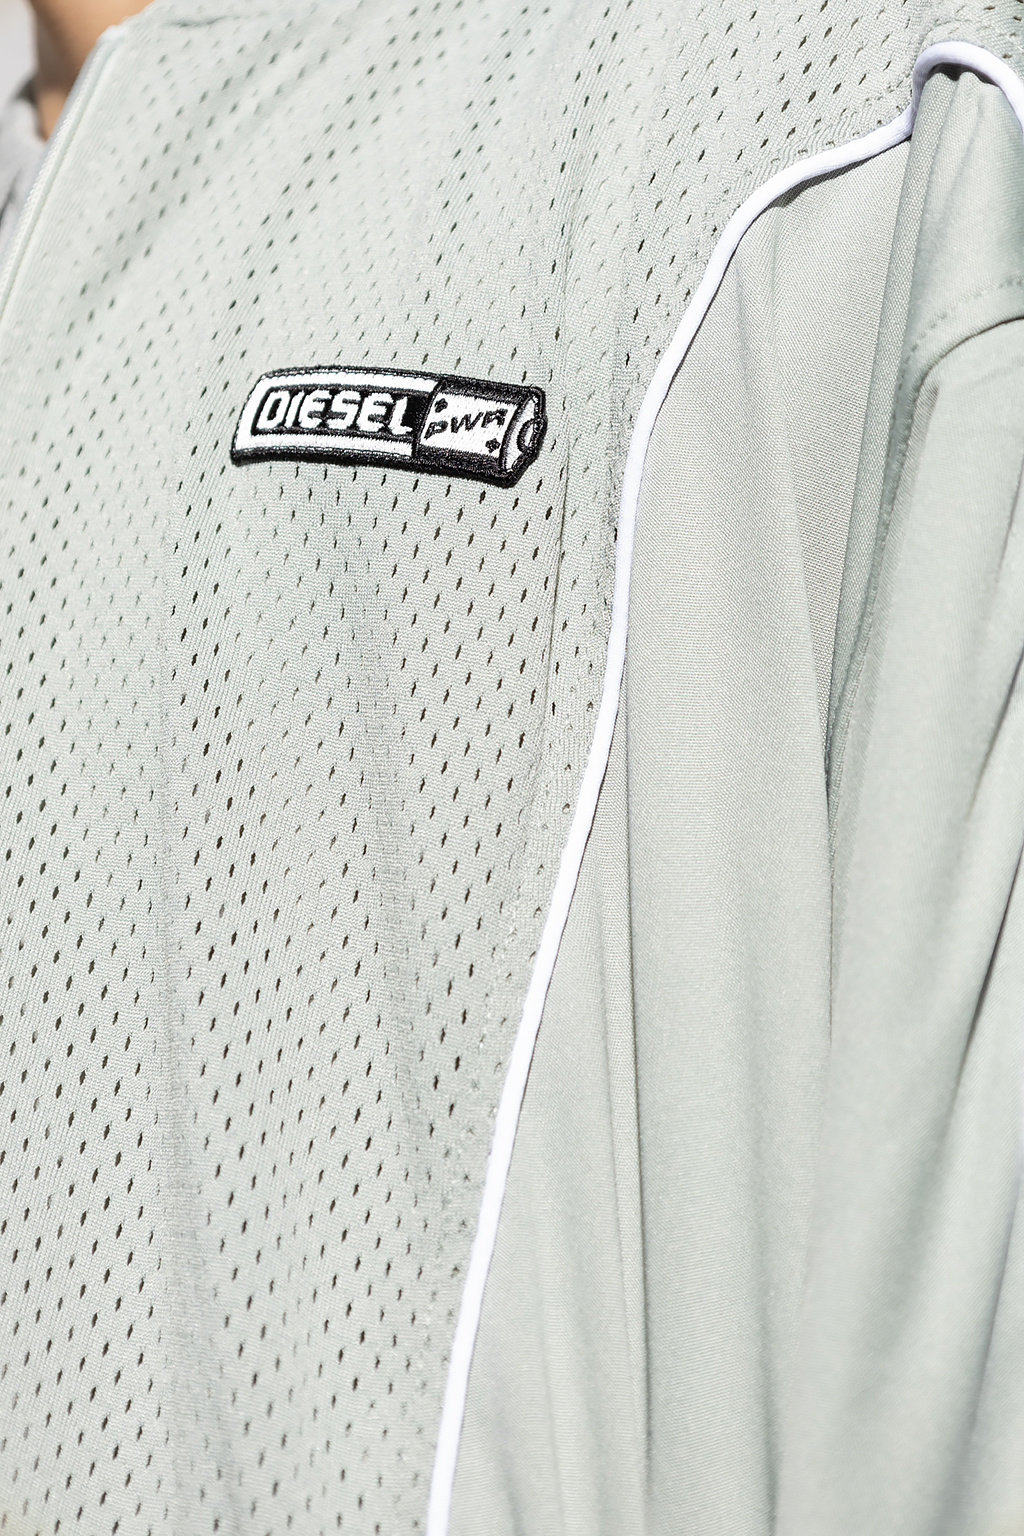 Diesel 'S-RELAX' hoodie | Men's Clothing | Vitkac